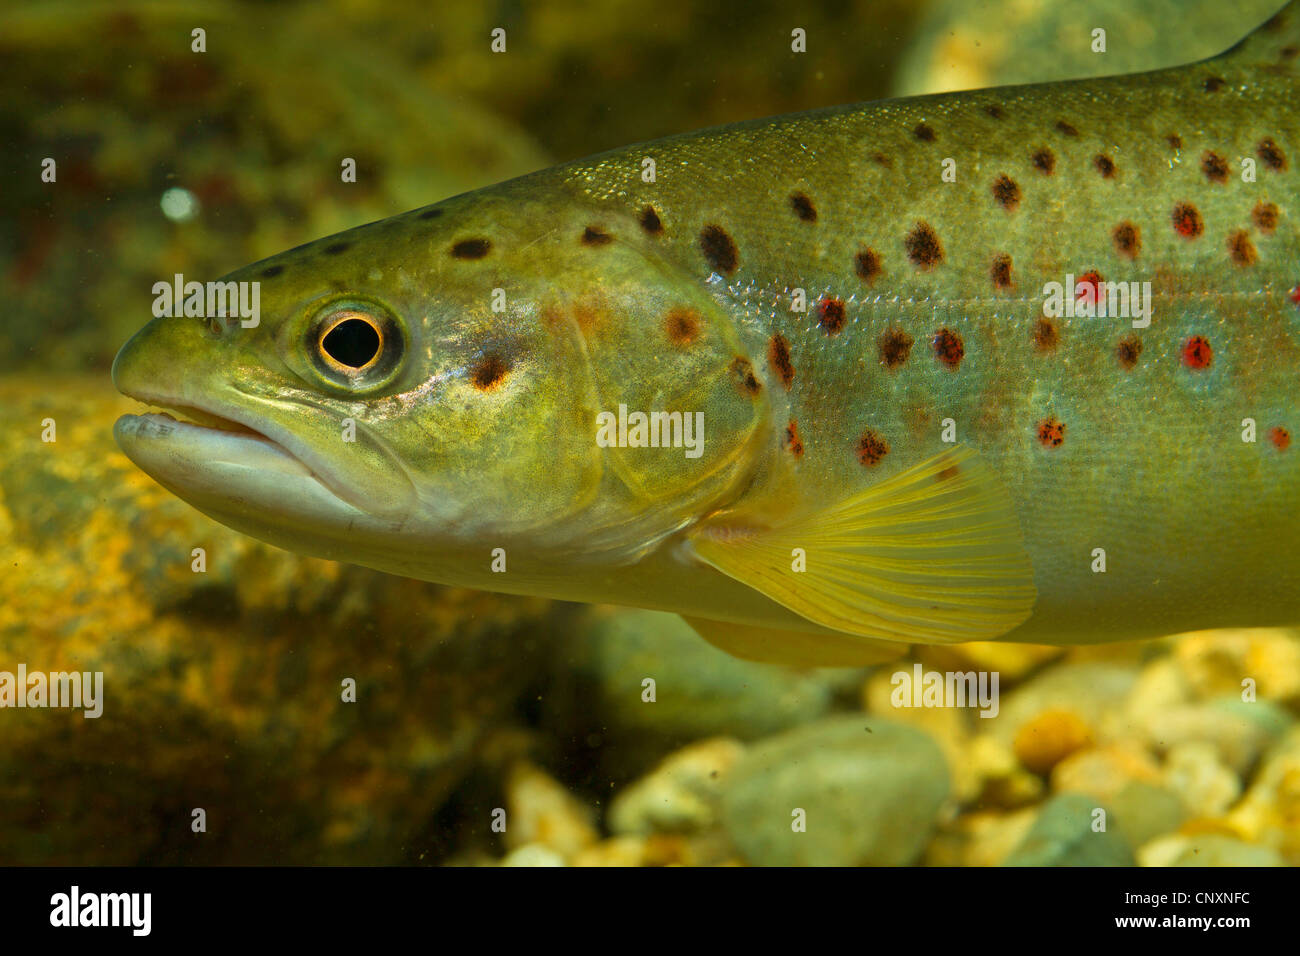 brown trout, river trout, brook trout (Salmo trutta fario), portrait, Germany Stock Photo